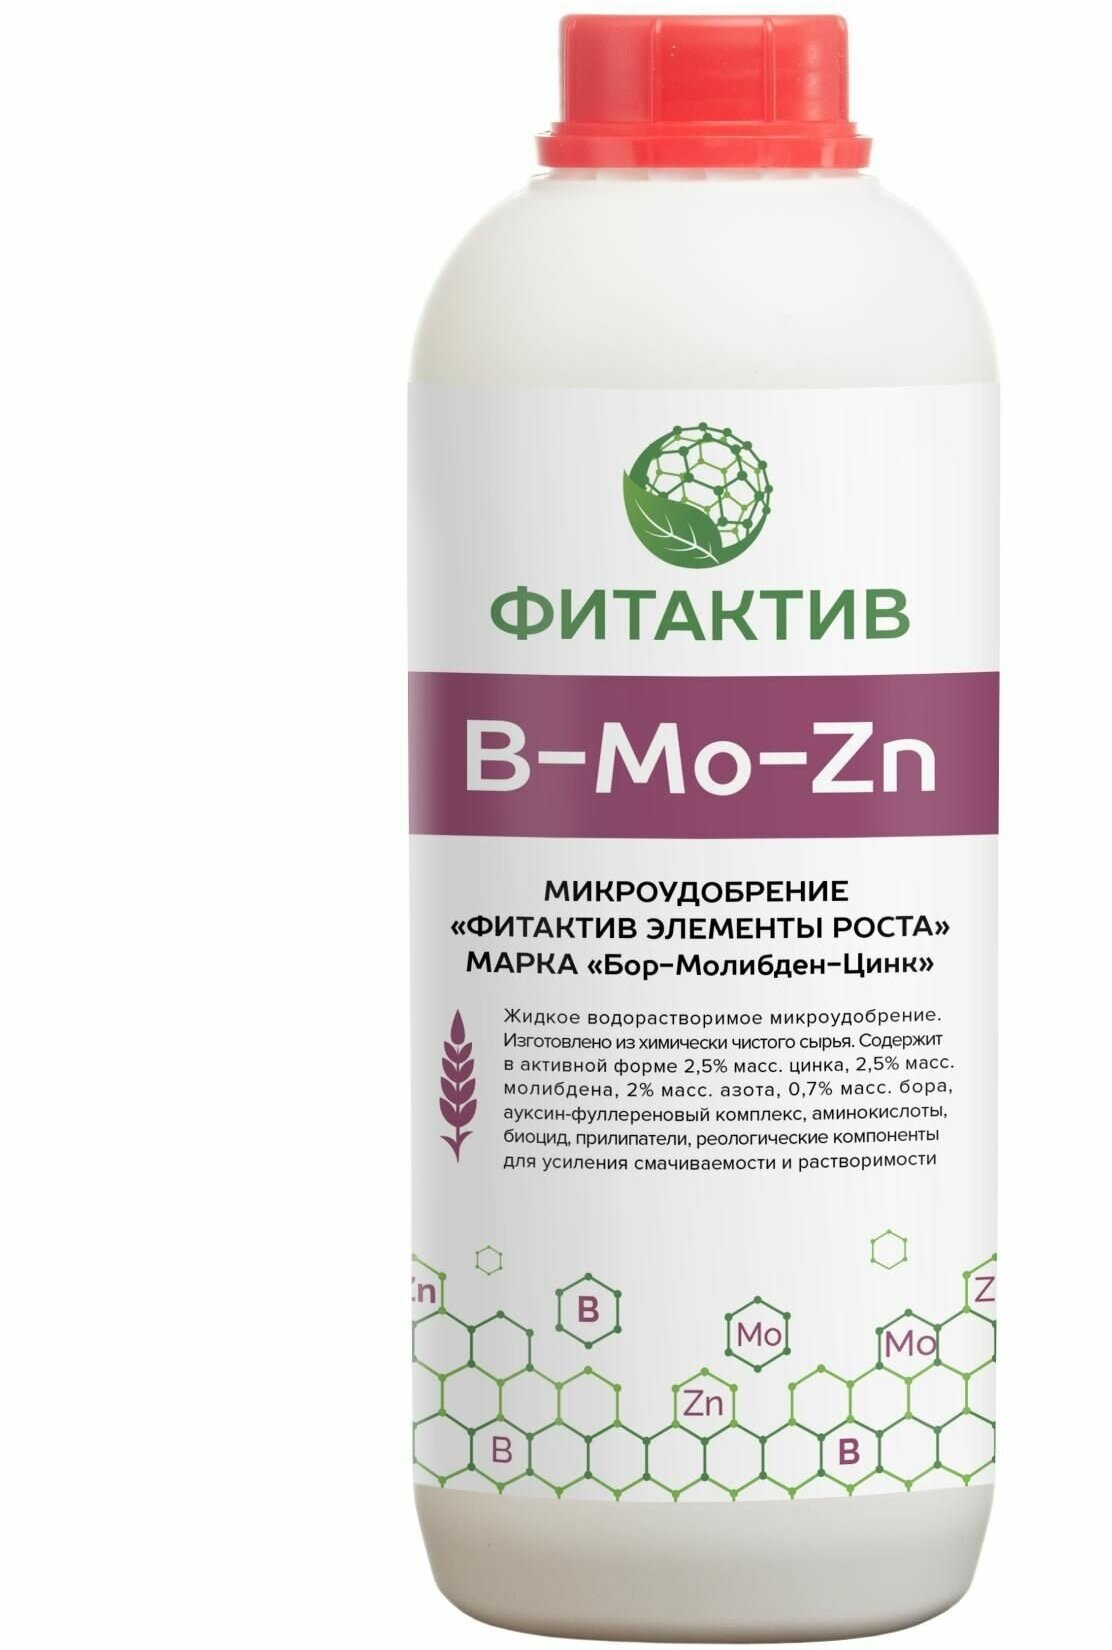 Удобрение для ускорения обмена веществ Фитактив Бор-Молибден-Цинк (Fitaktiv B-Mo-Zn).